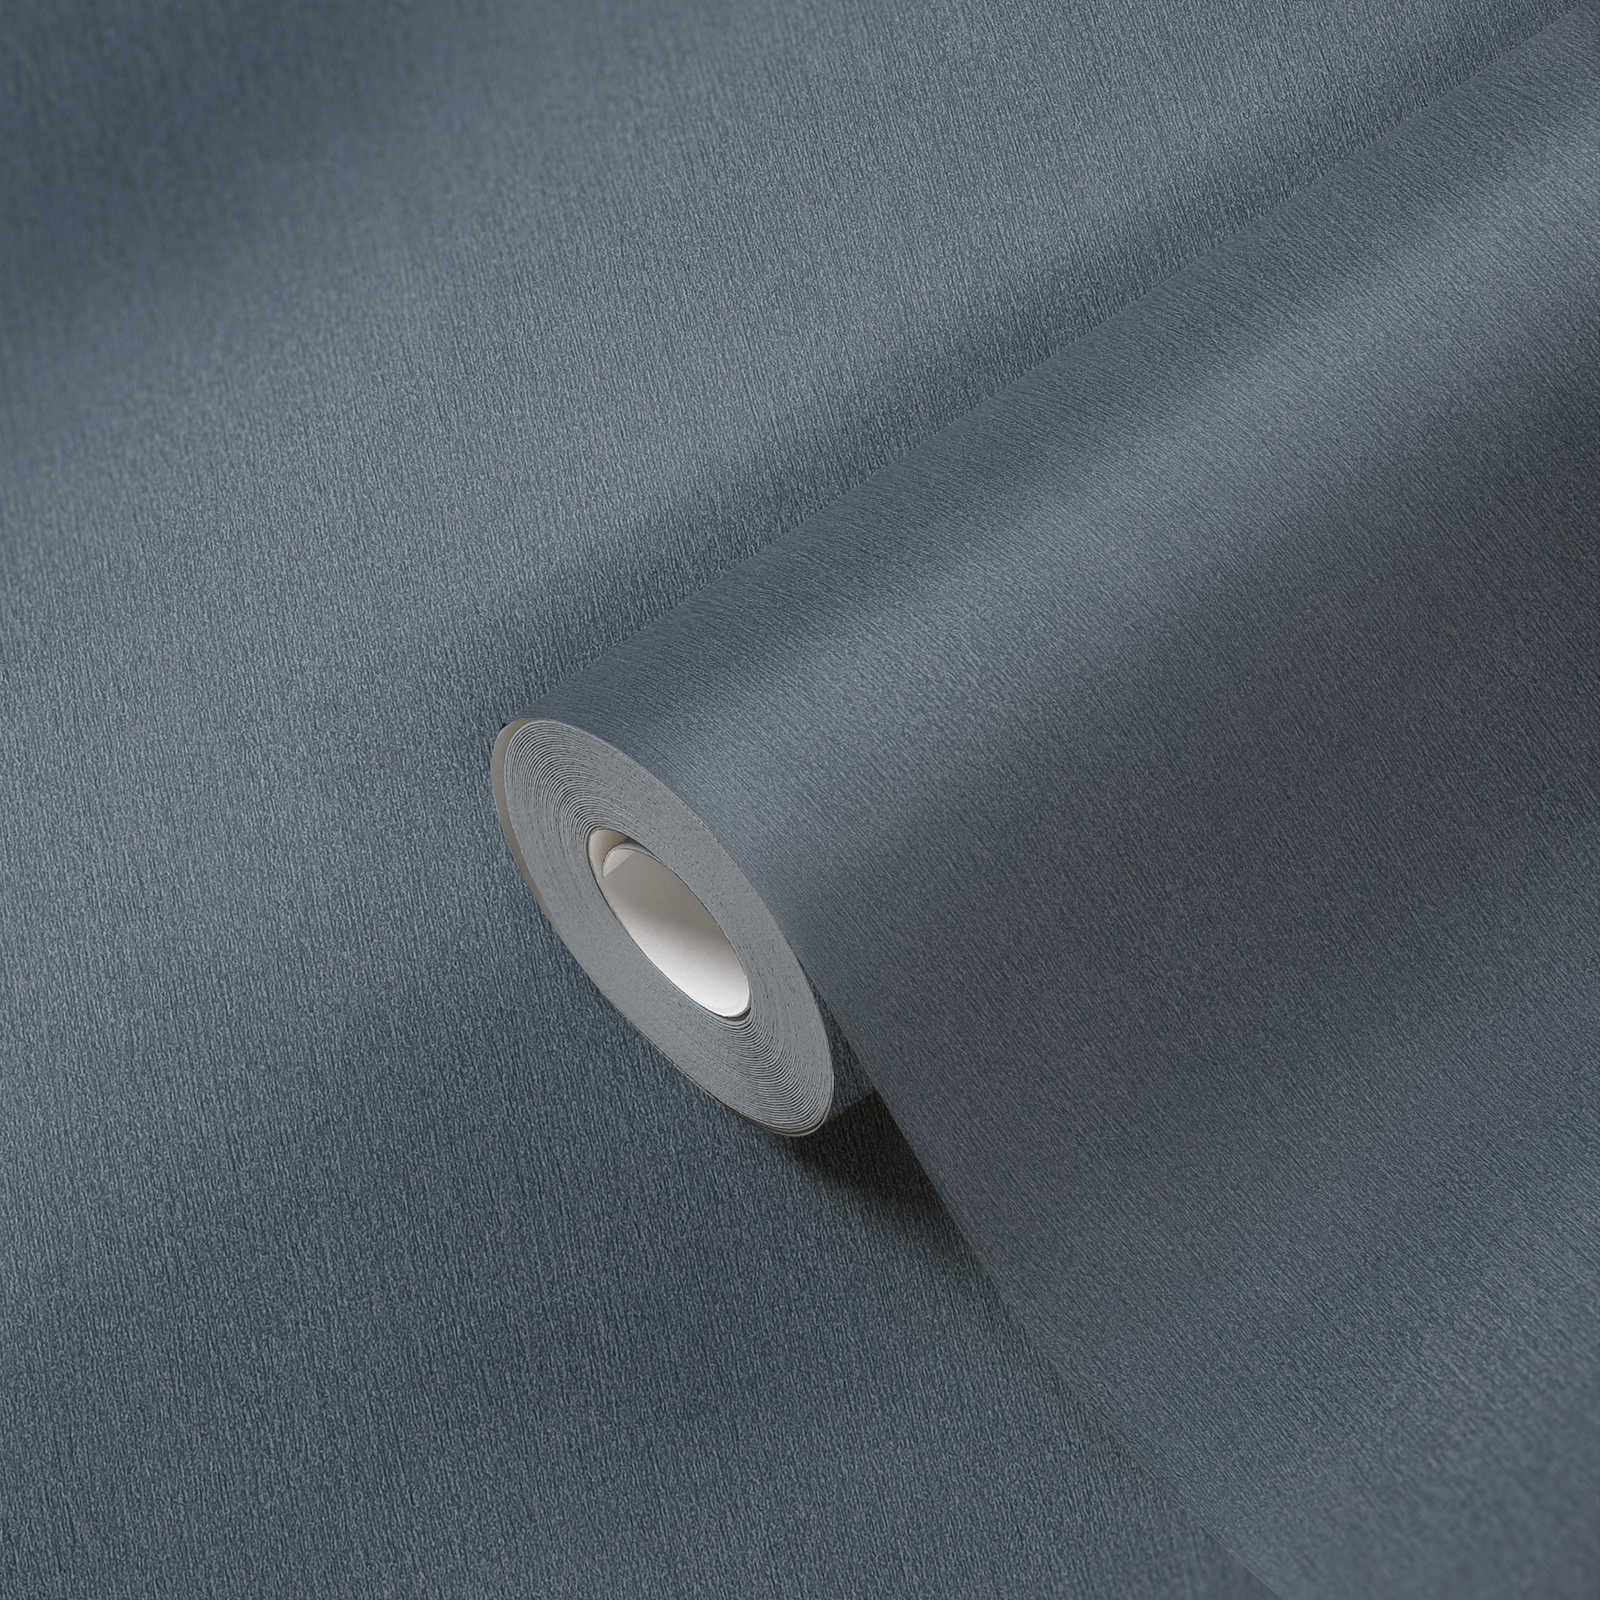             Papel pintado gris oscuro no tejido, monocolor con sombreado de color
        